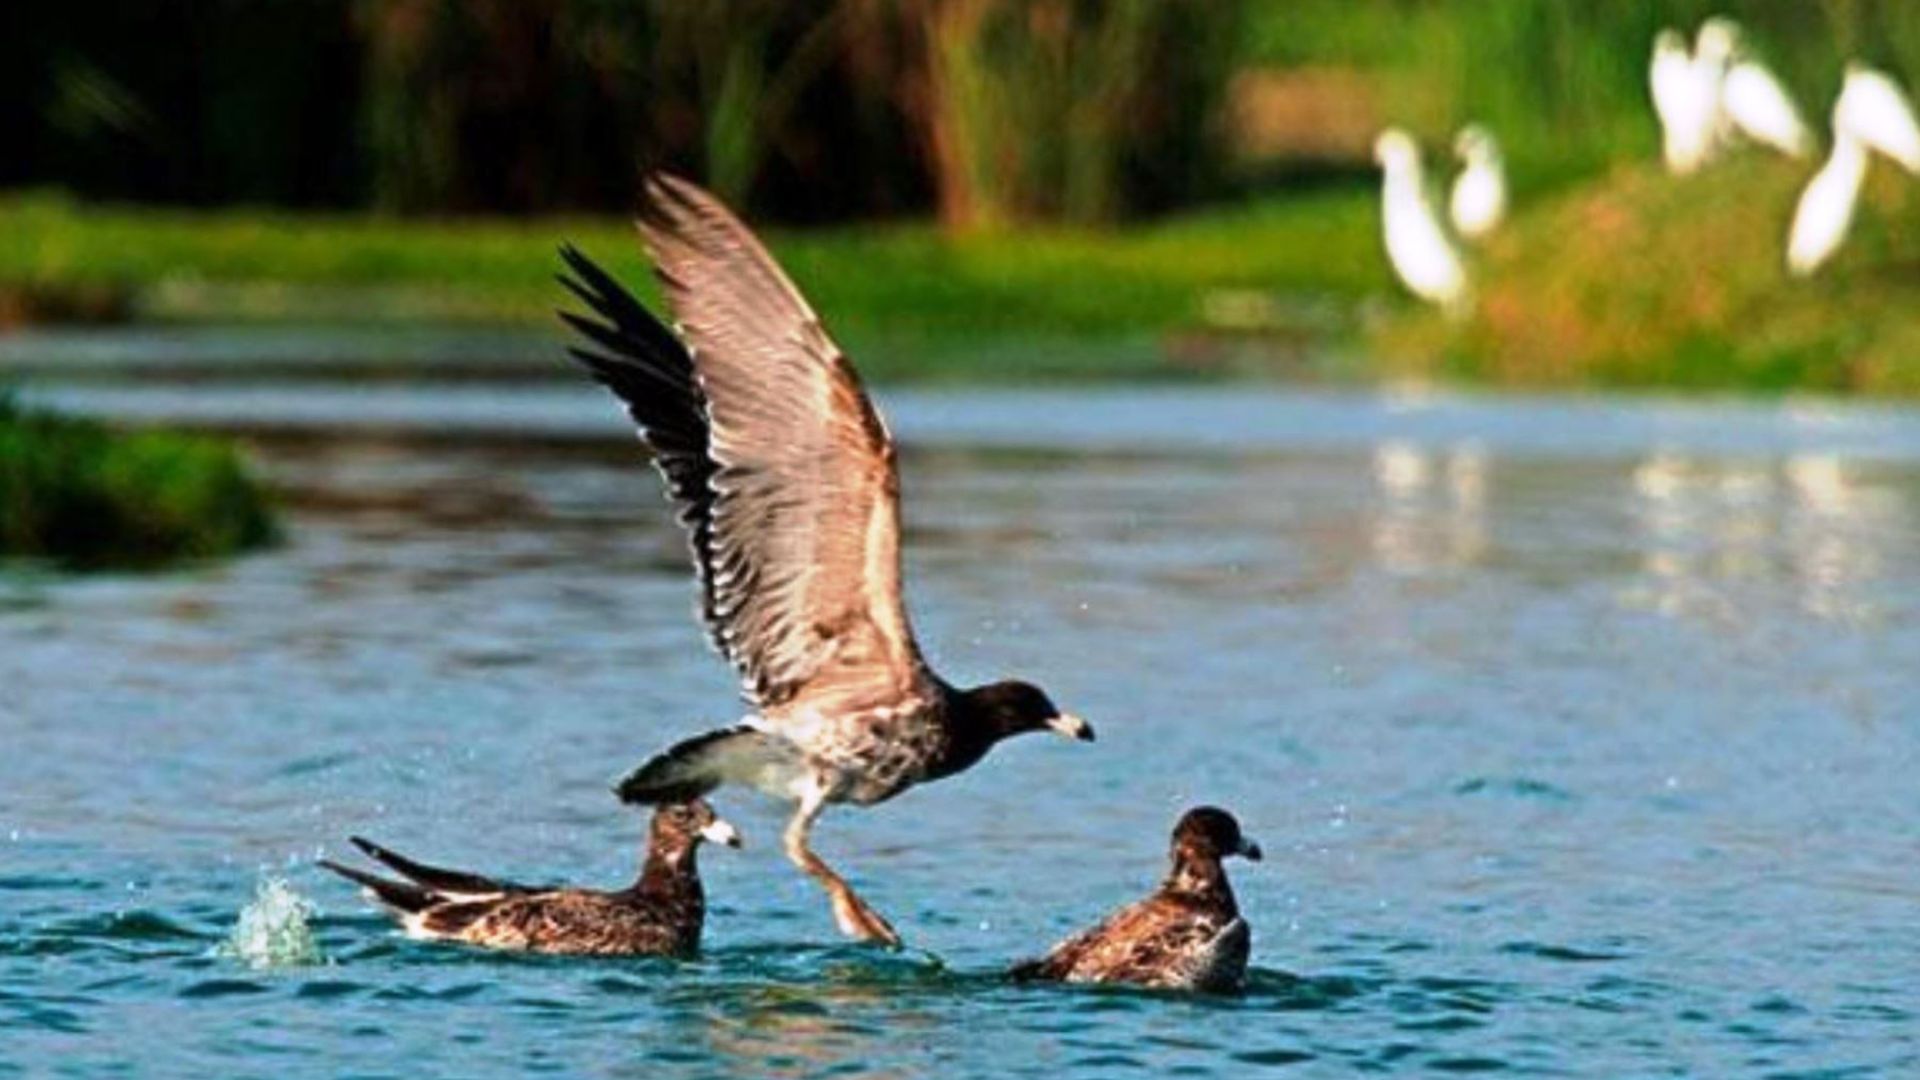 La Zona Reservada de los Pantanos de Villa alberga numerosas especies de aves, insectos y peces. (Andina)